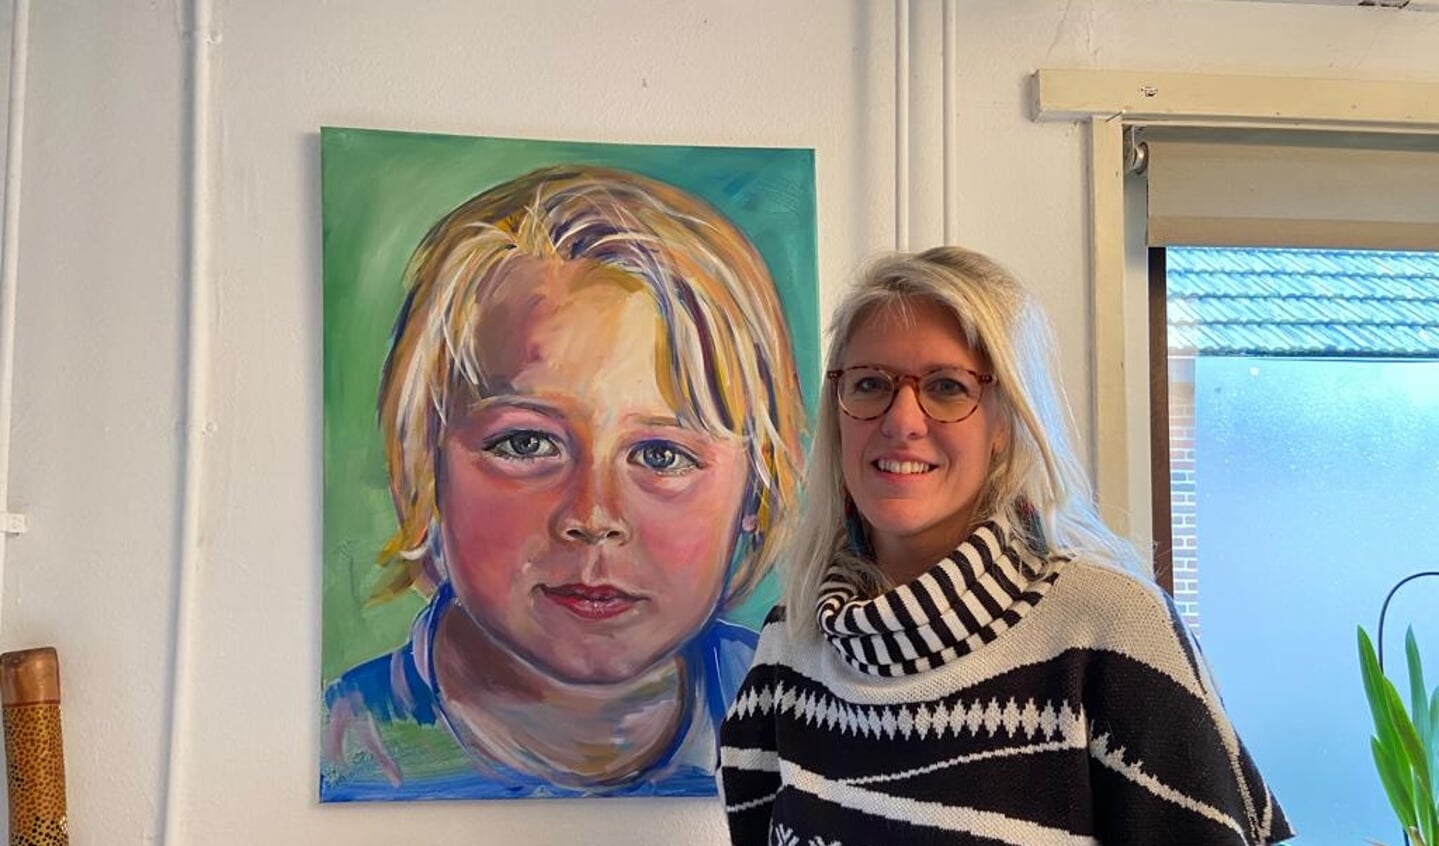 Kunstschilder Mariek Warmelink met een portret van haar zoon.